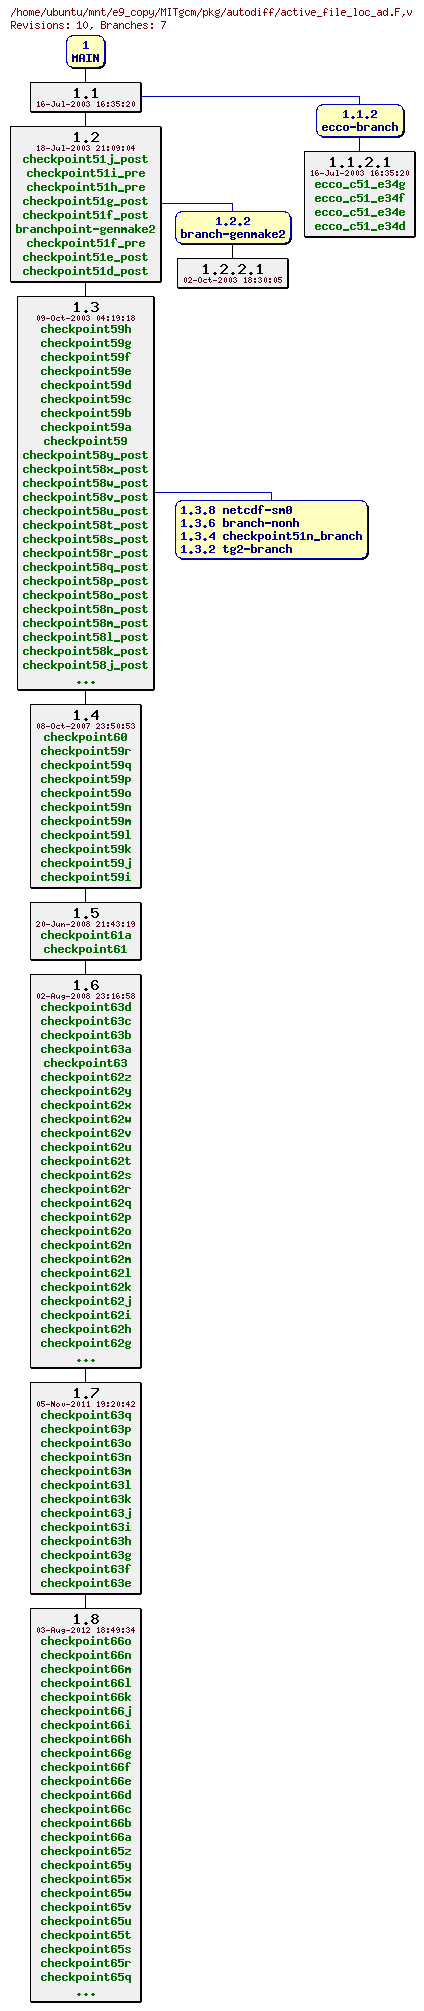 Revisions of MITgcm/pkg/autodiff/active_file_loc_ad.F